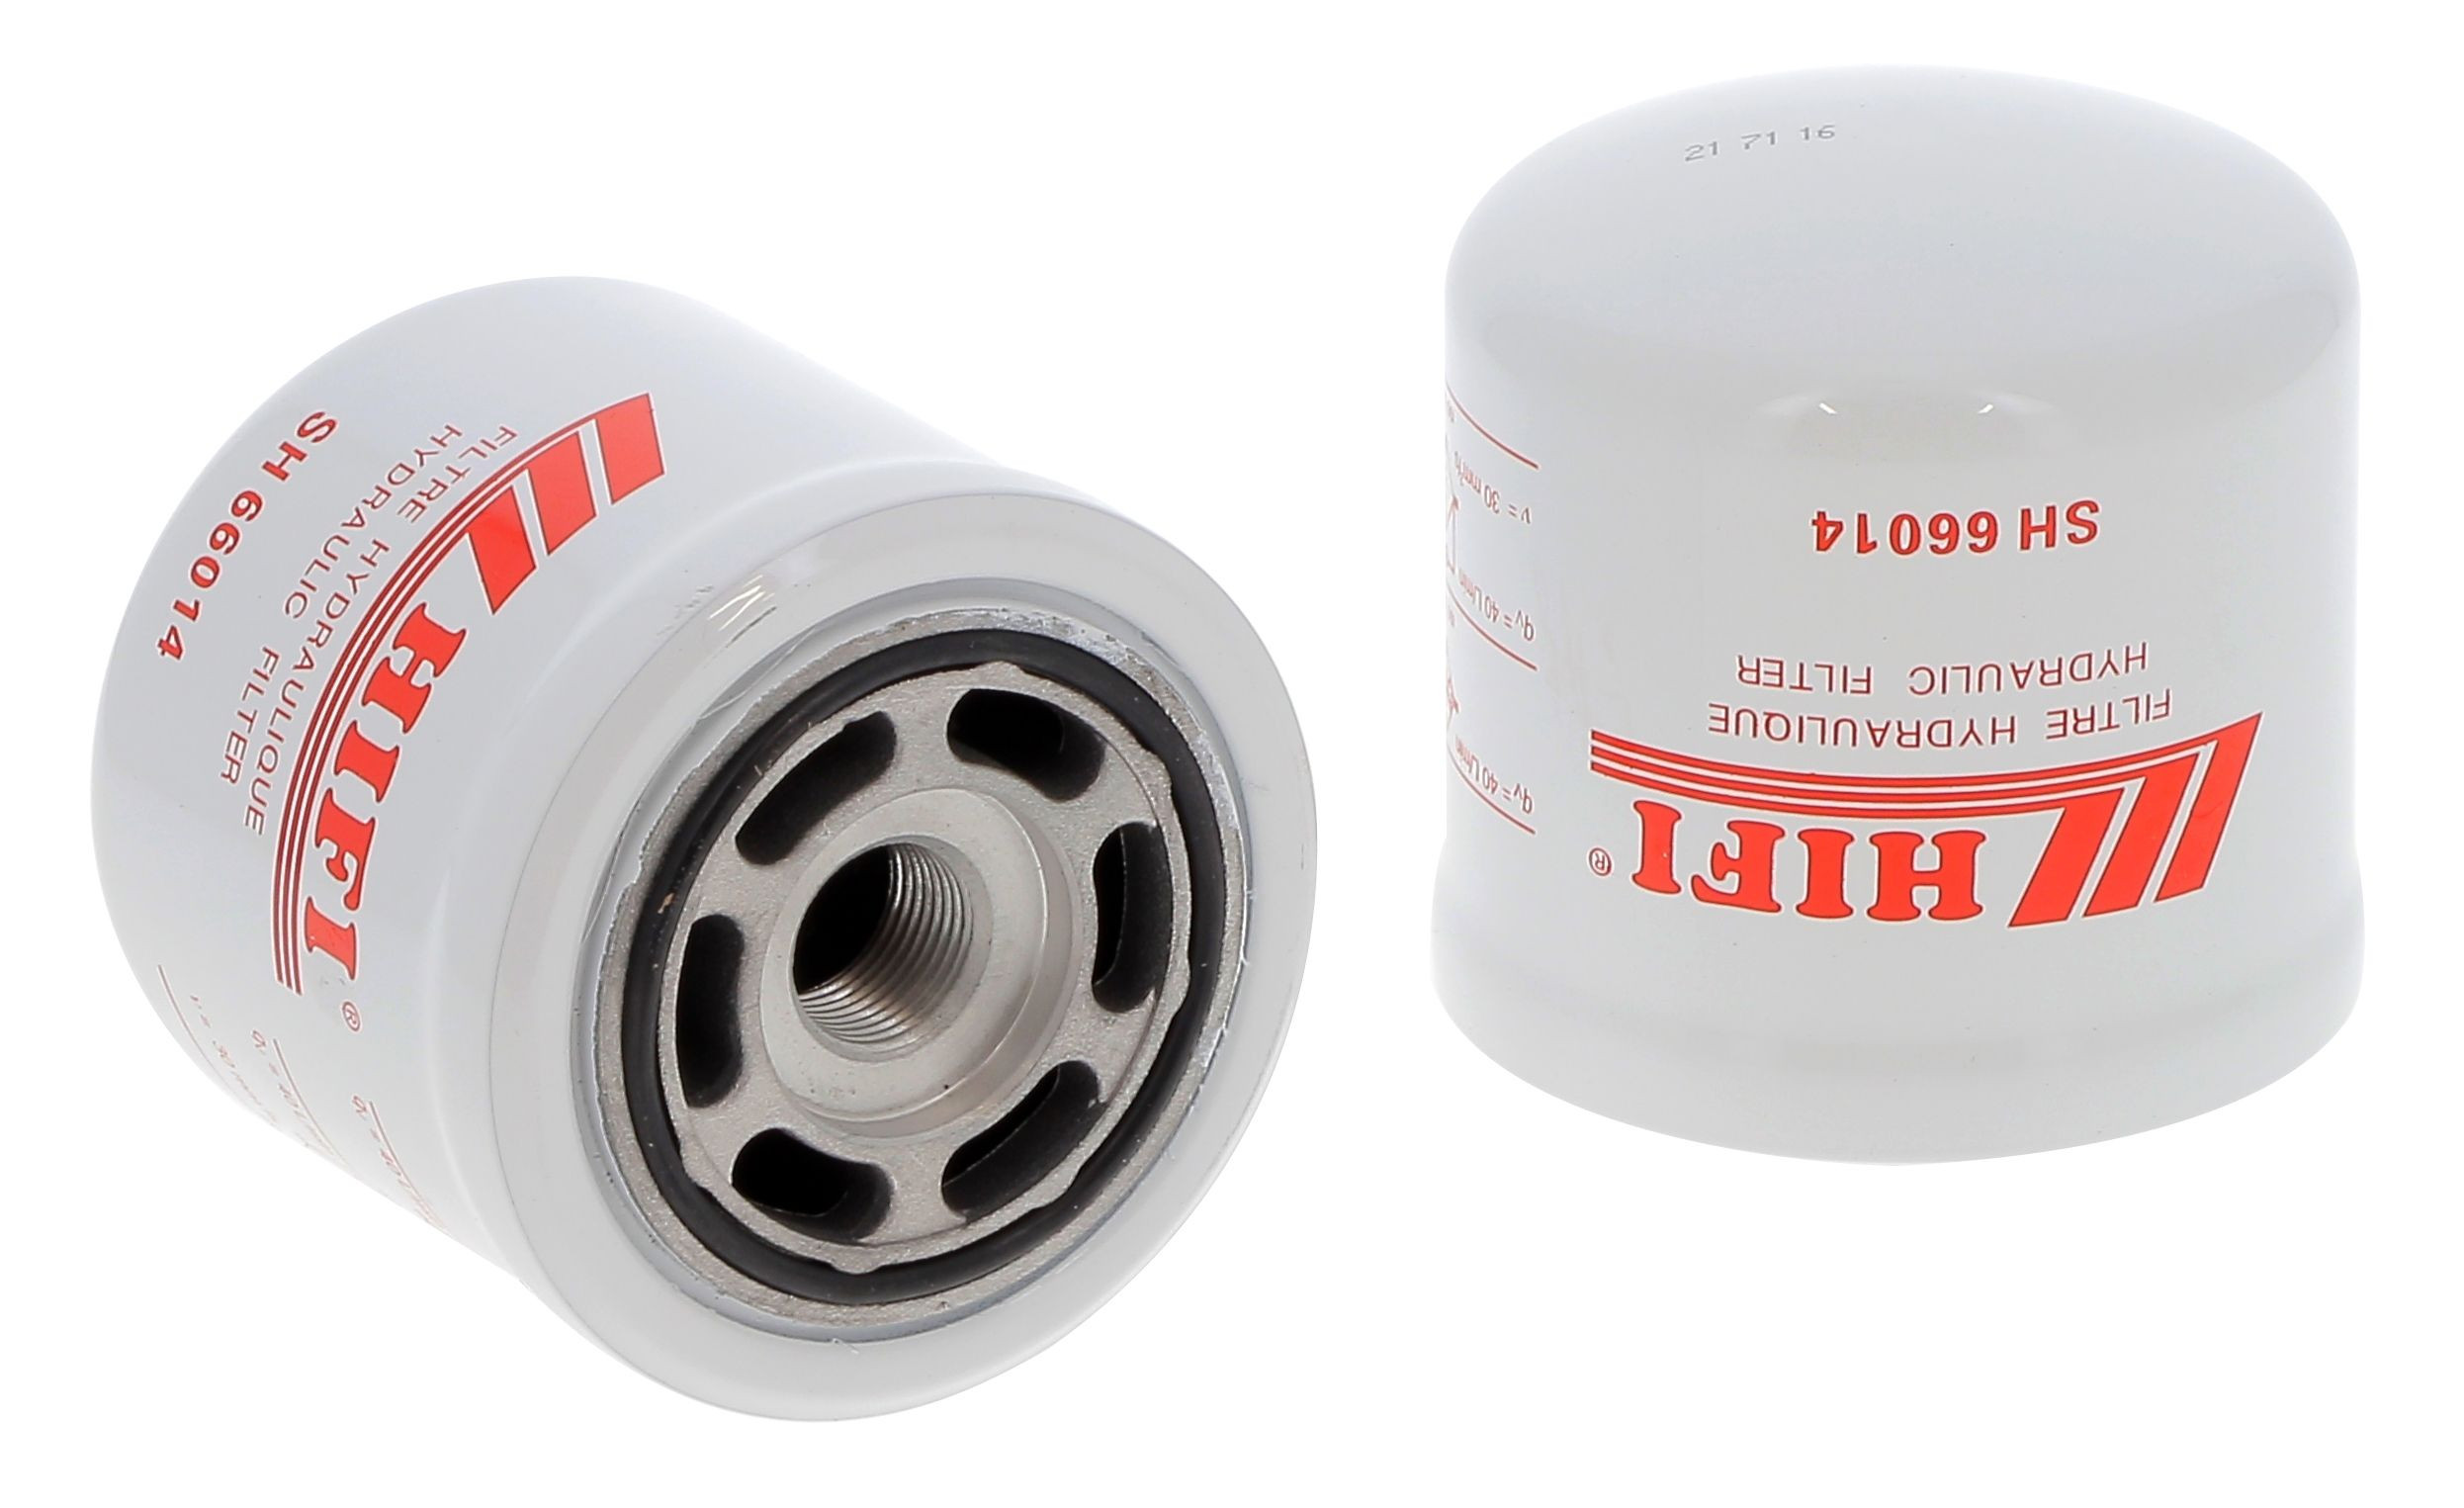 Filtr hydrauliczny  SH 66014 do CLARK GPM 12-20 SL L6697